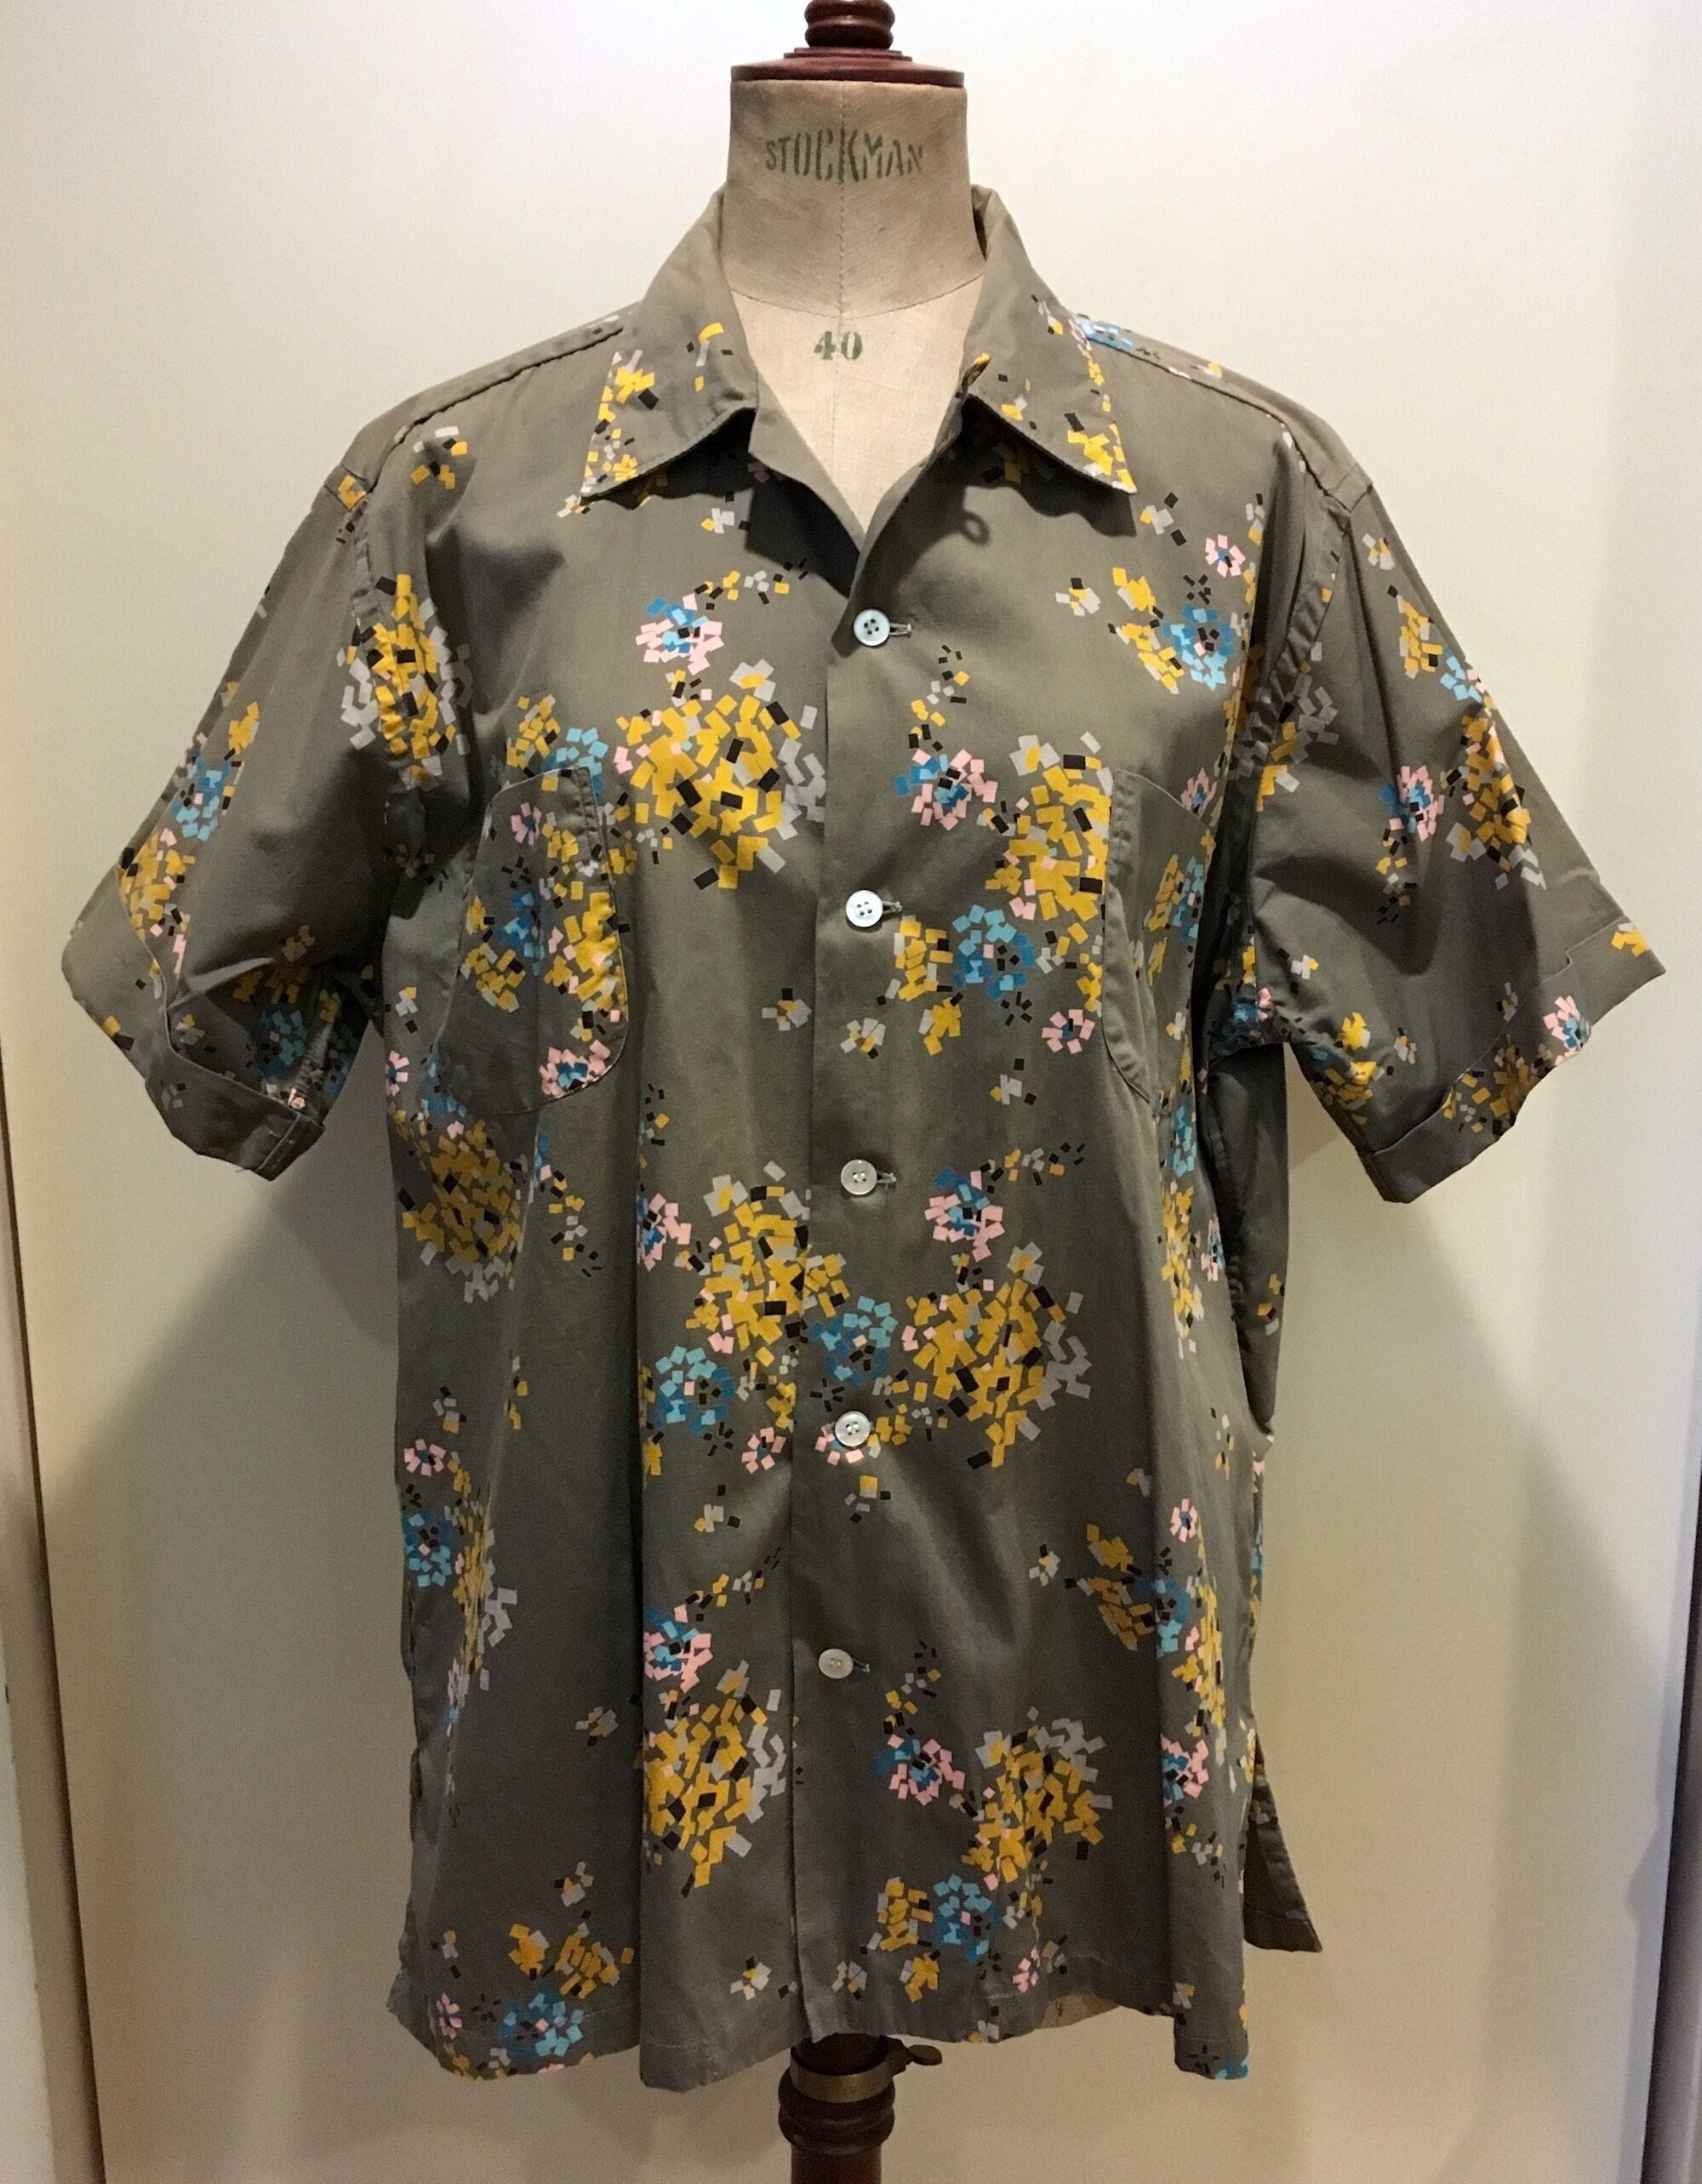 Kleding Herenkleding Overhemden & T-shirts Overhemden Vintage Original 1950’s Mustard Gold Schiaparelli Shirt 